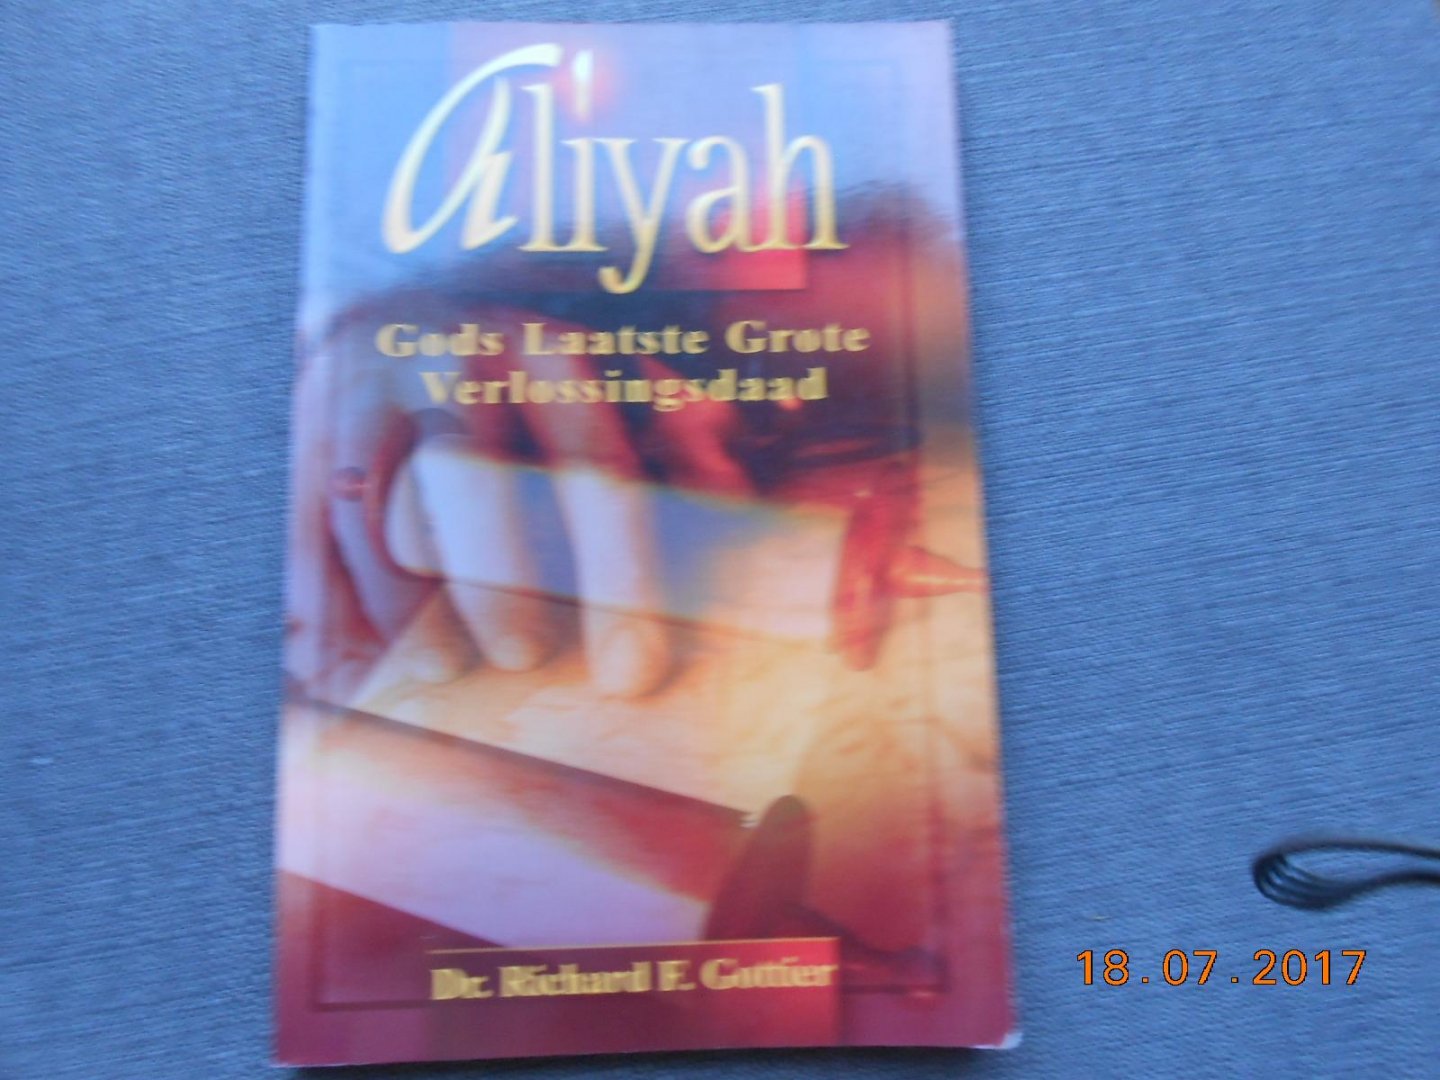 Gottier, R.F. - Aliyah / Gods laatste grote verlossingsdaad